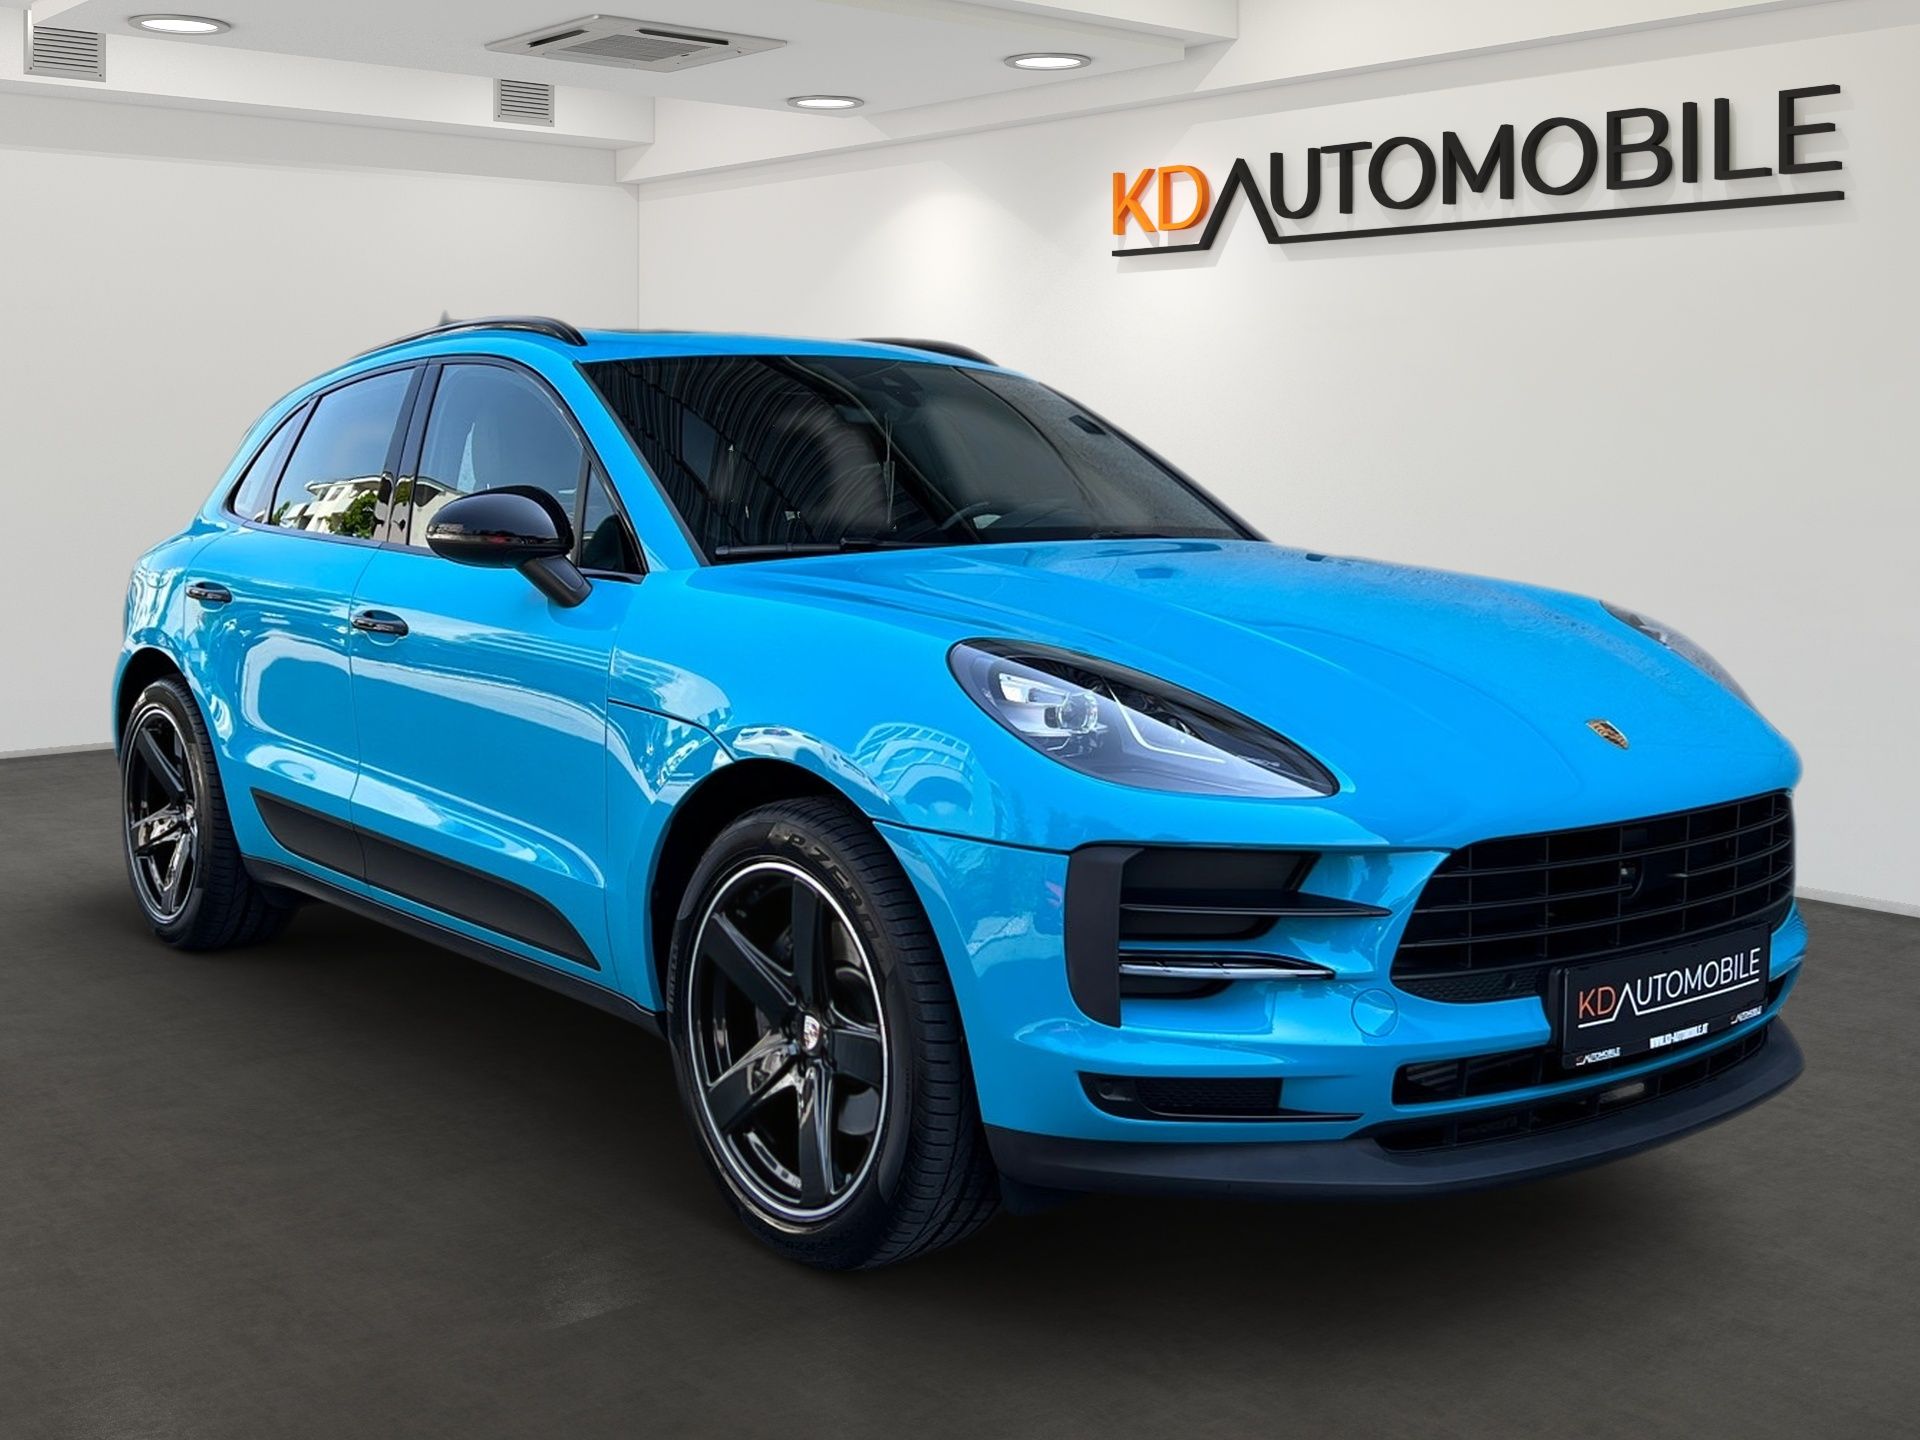 Ein blauer Porsche Macan Turbo steht in einem digitalen Showroom von CARMERA, Referenzbeispiel KD Automobile